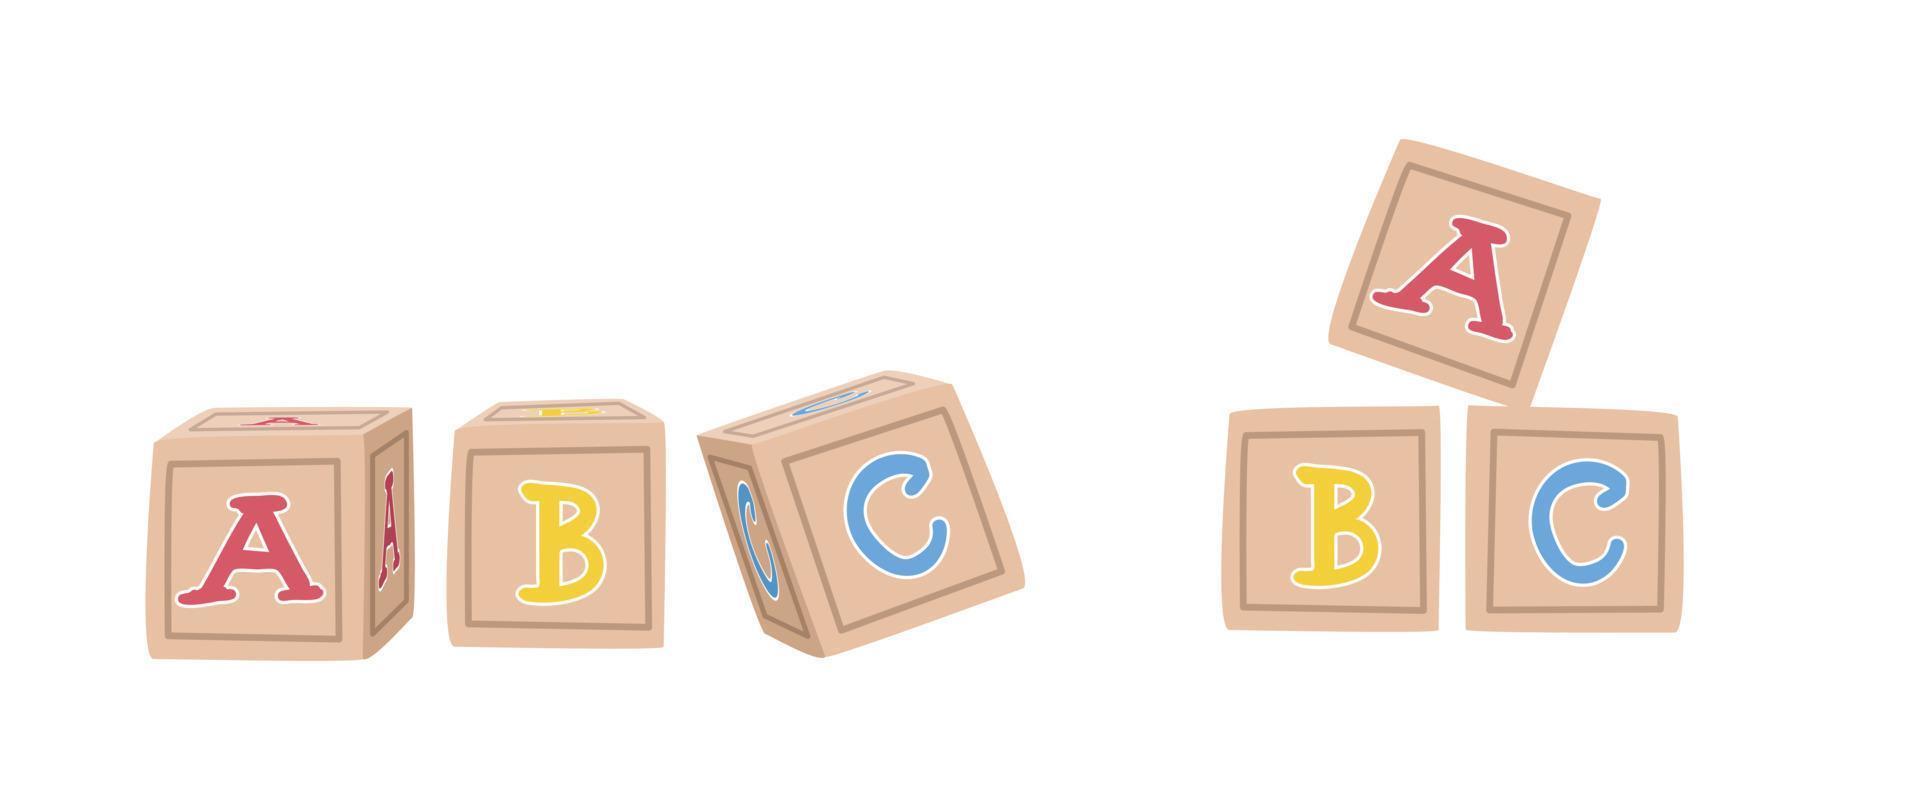 Baby Spielzeug Holzbuchstaben Blöcke Cliparts. einfache niedliche alphabetblöcke, die abc flache vektorillustration einzeln buchstabieren. Baby-Blöcke-Clipart im Cartoon-Stil. abc blockiert Vektor. kinder, babypartykonzept vektor